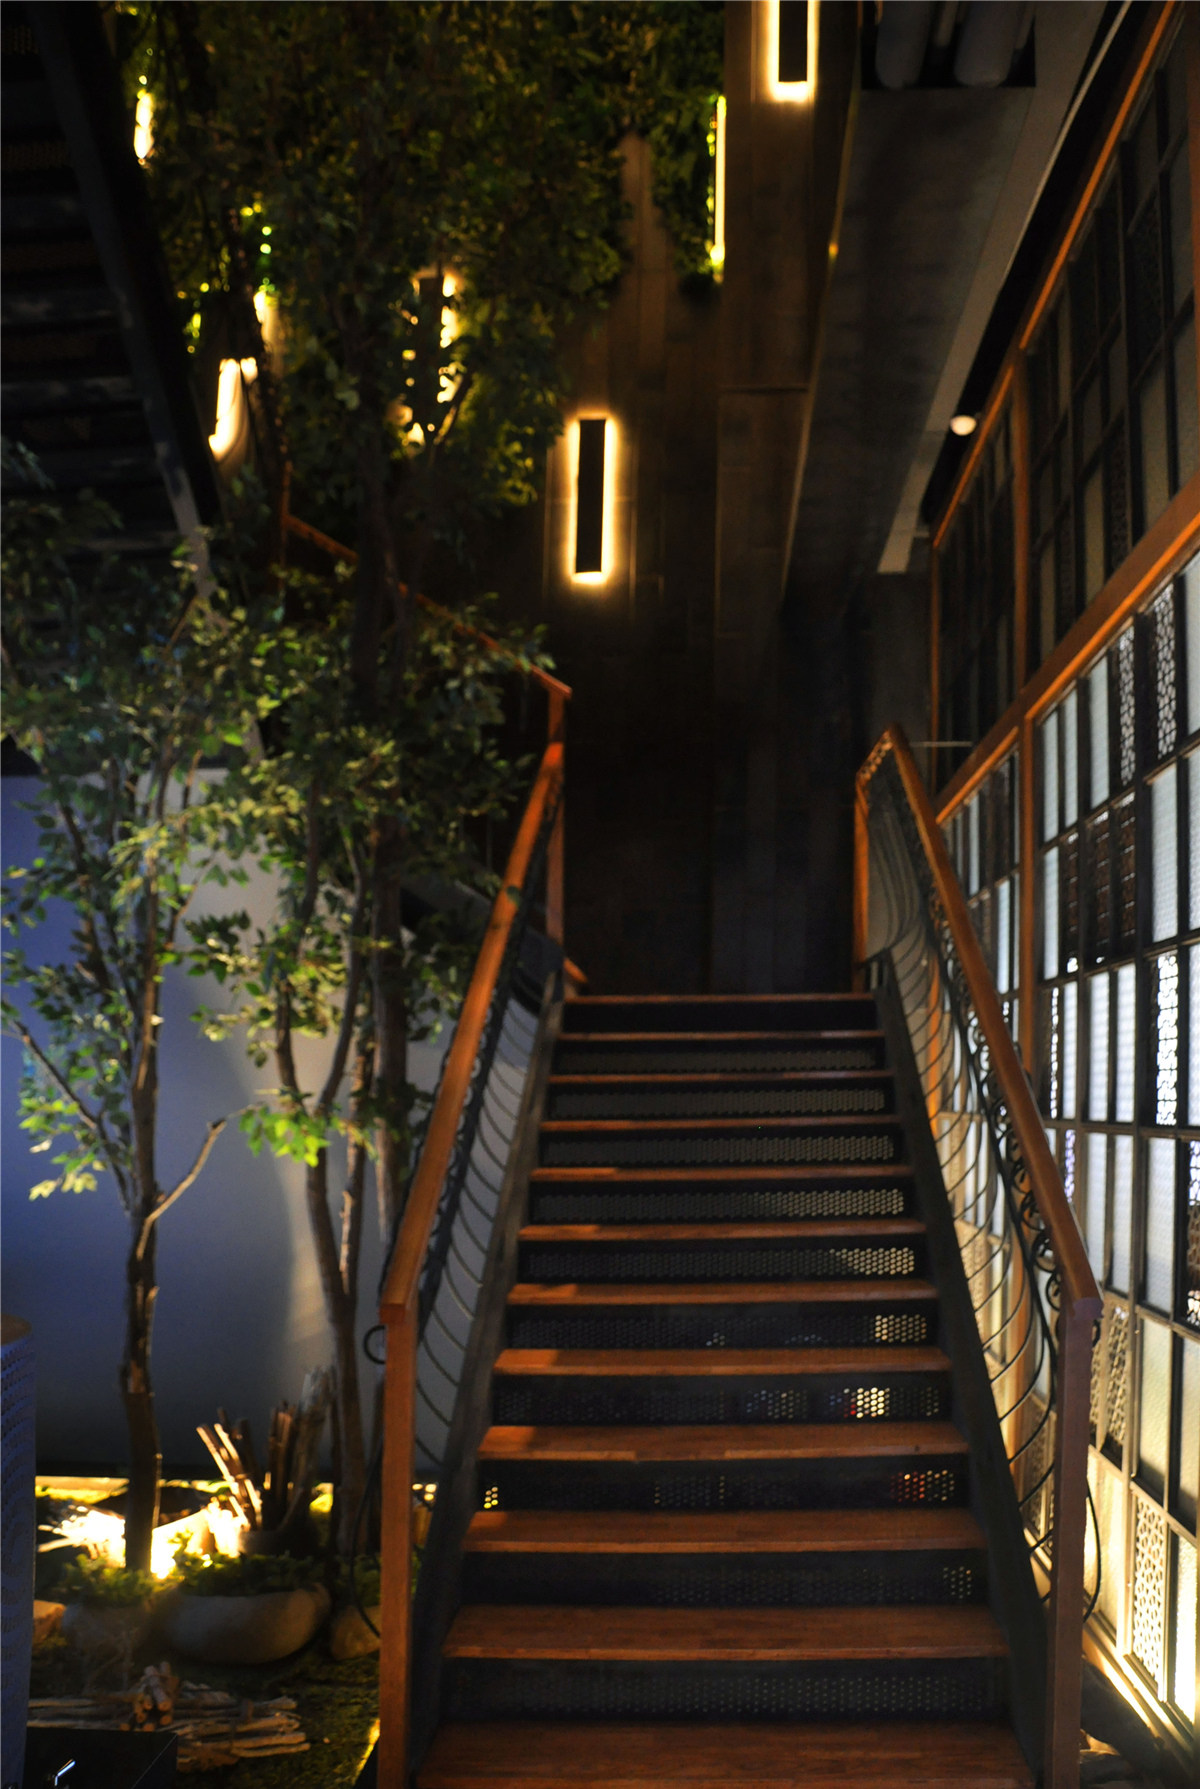 镂空造型的铁板、原木踏步、异域风情的精致扶手，各式风格混搭的楼梯很有看点。拾级而上，满眼木色的温馨和绿植的清新。各种样式的花玻璃、精心布置的中空小景以及恰到好处的灯光效果，将餐厅独特的空间气质延伸至二楼。